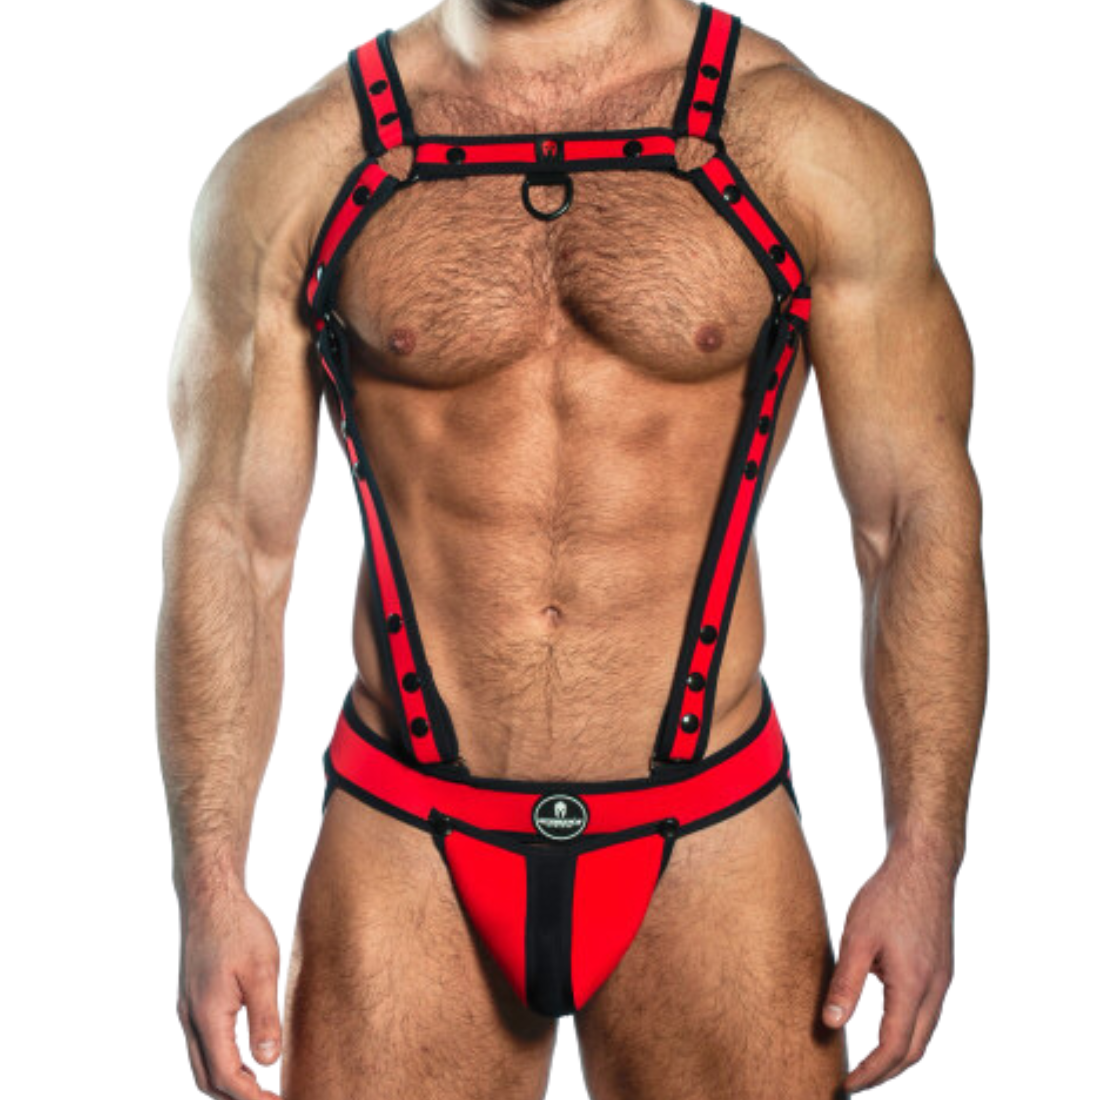 Sexy rode designer jockstrap + harnas met zwarte biezen en drukknopen, ontworpen door het Italiaanse modehuis Sparta’s Harness en te koop bij Flavourez.